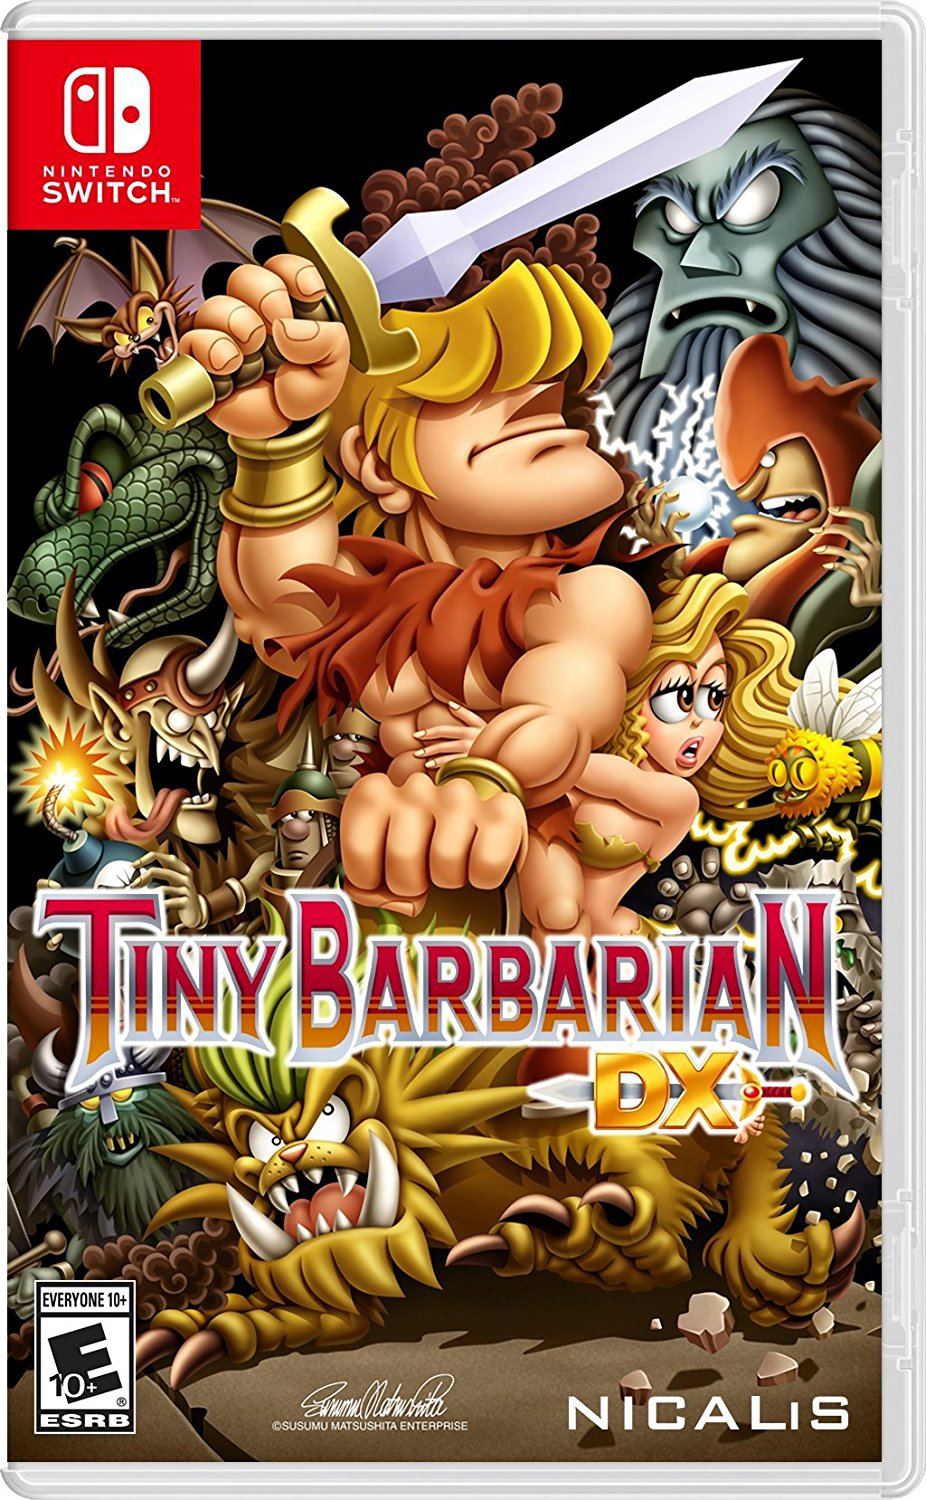 Tiny Barbarian DX (US)